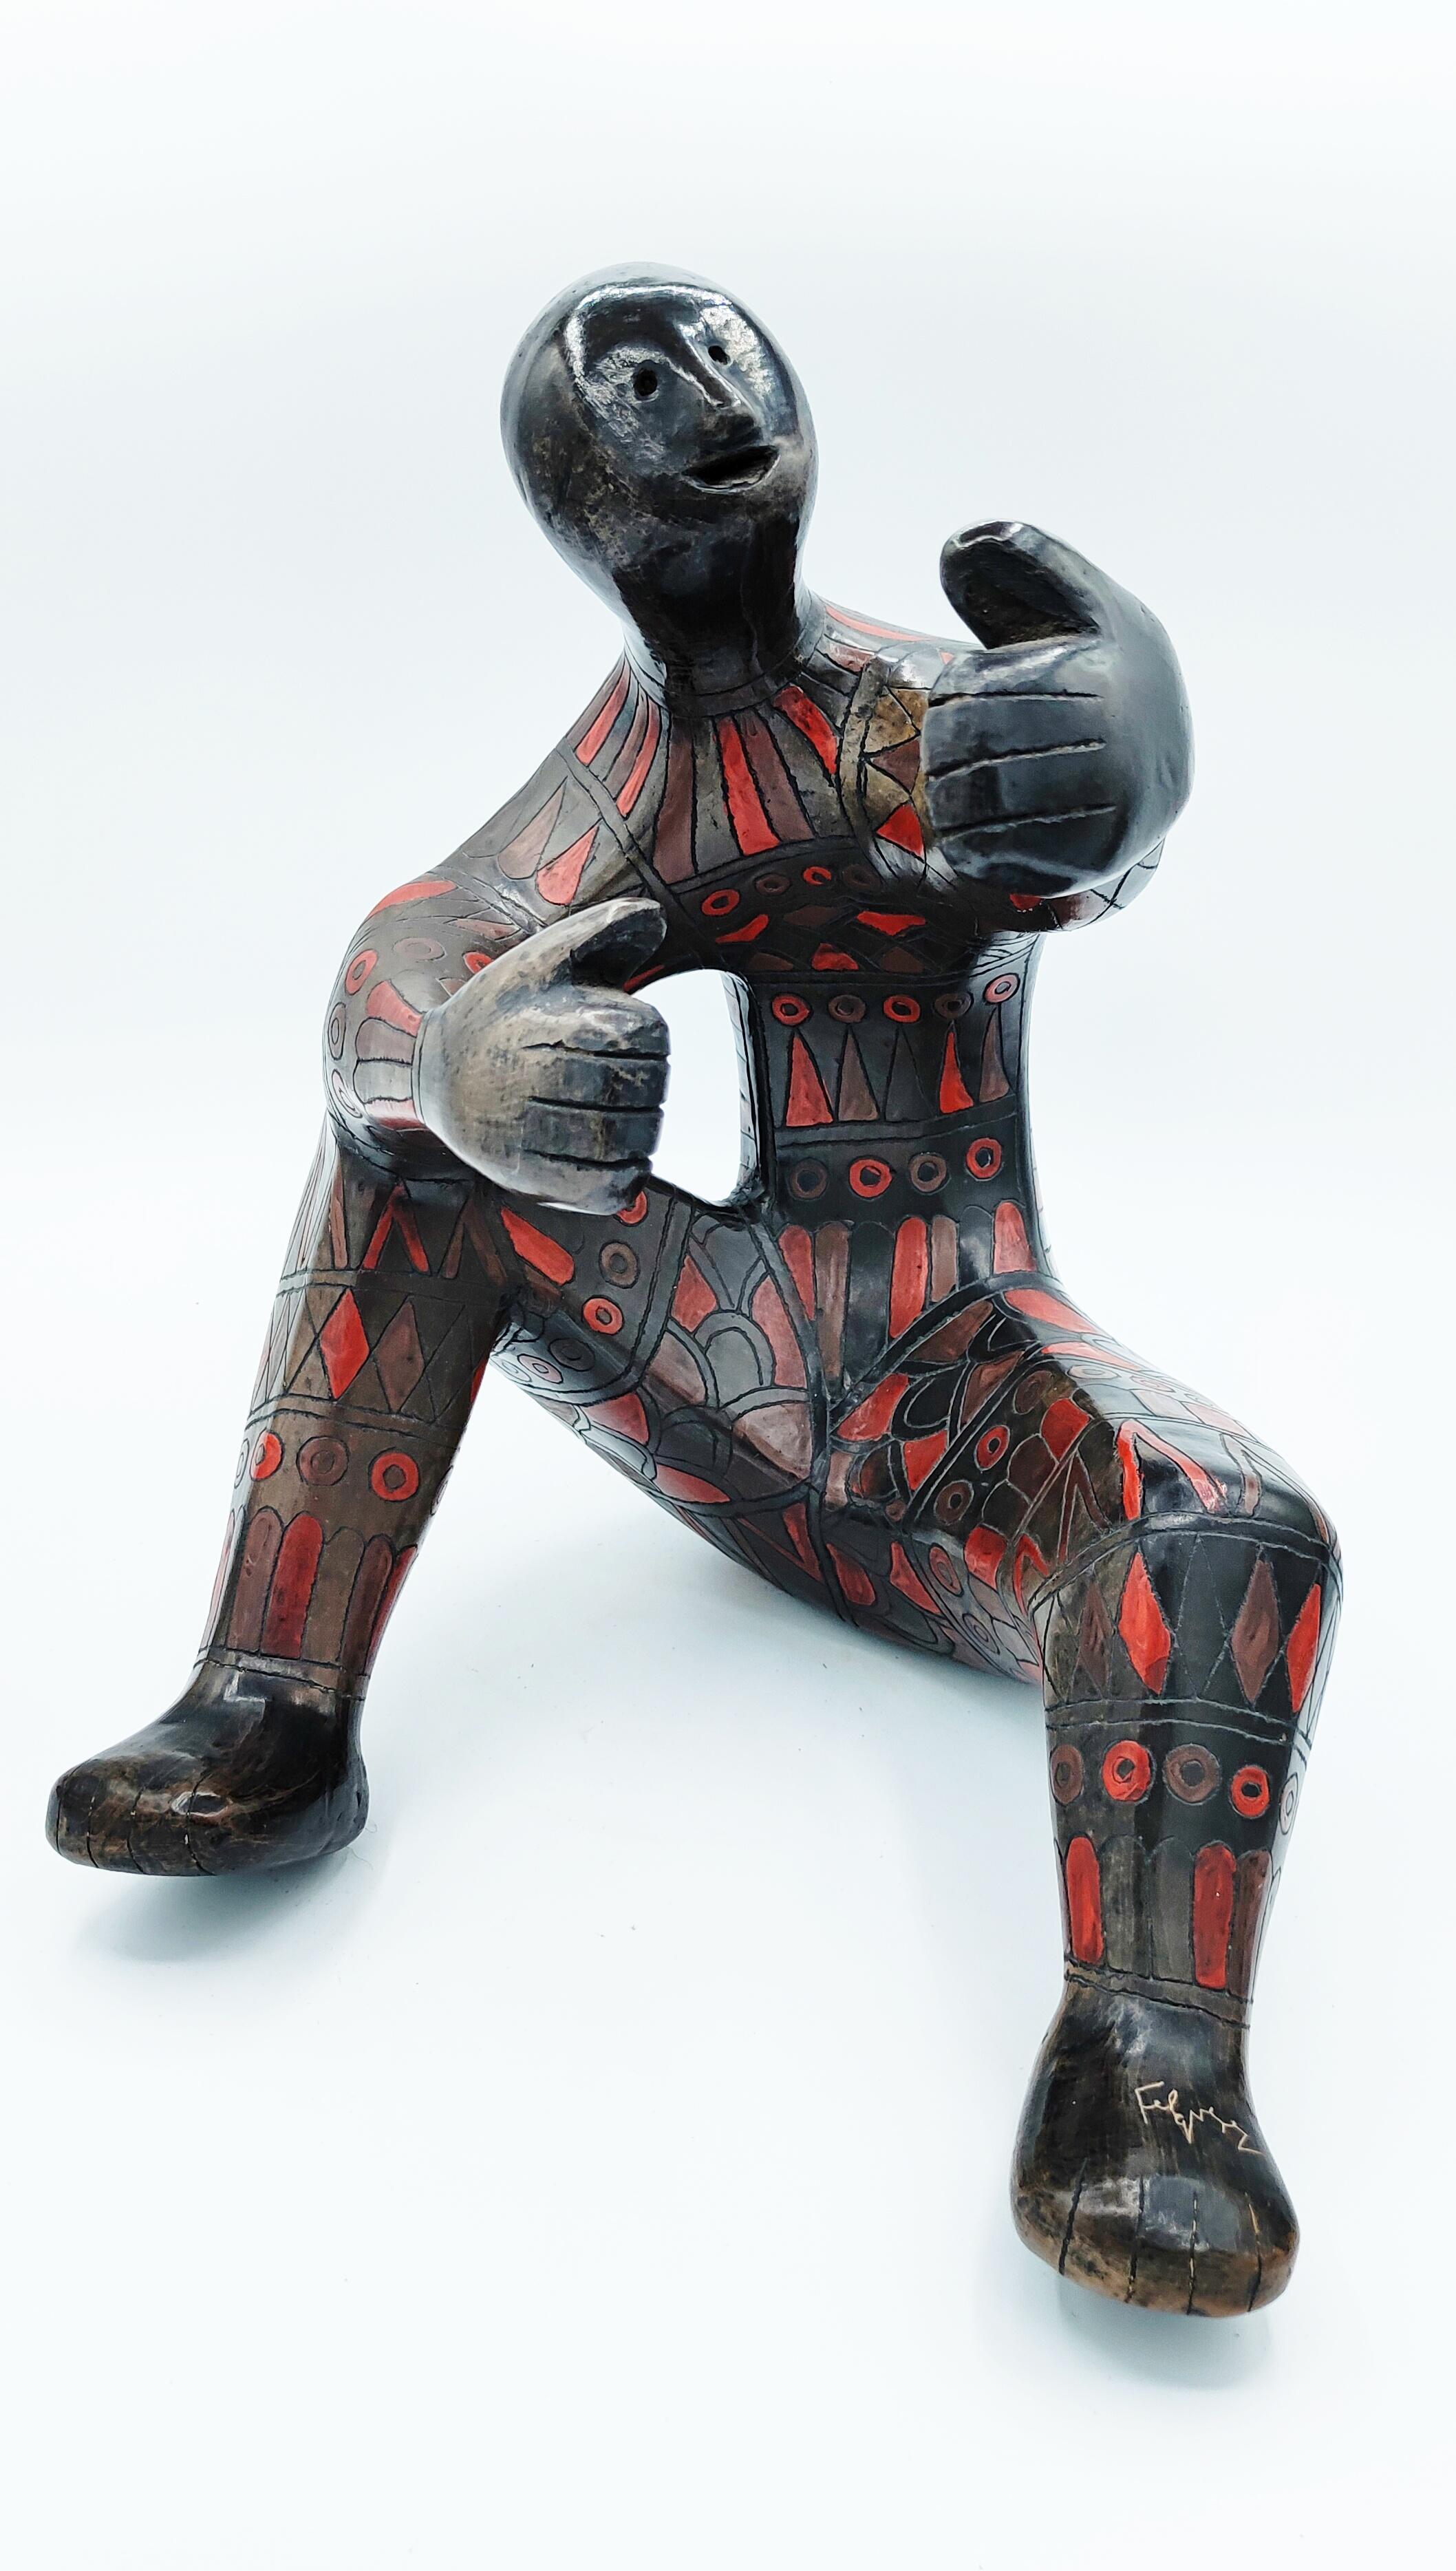 Grande sculpture figurative en céramique de Manuel Felguerez signée sur le pied, fabriquée dans les années 1960. Un travail incroyable avec ses couleurs et ses détails.
Objet très décoratif et attrayant.
Manuel Felguérez est né à Valparaíso,